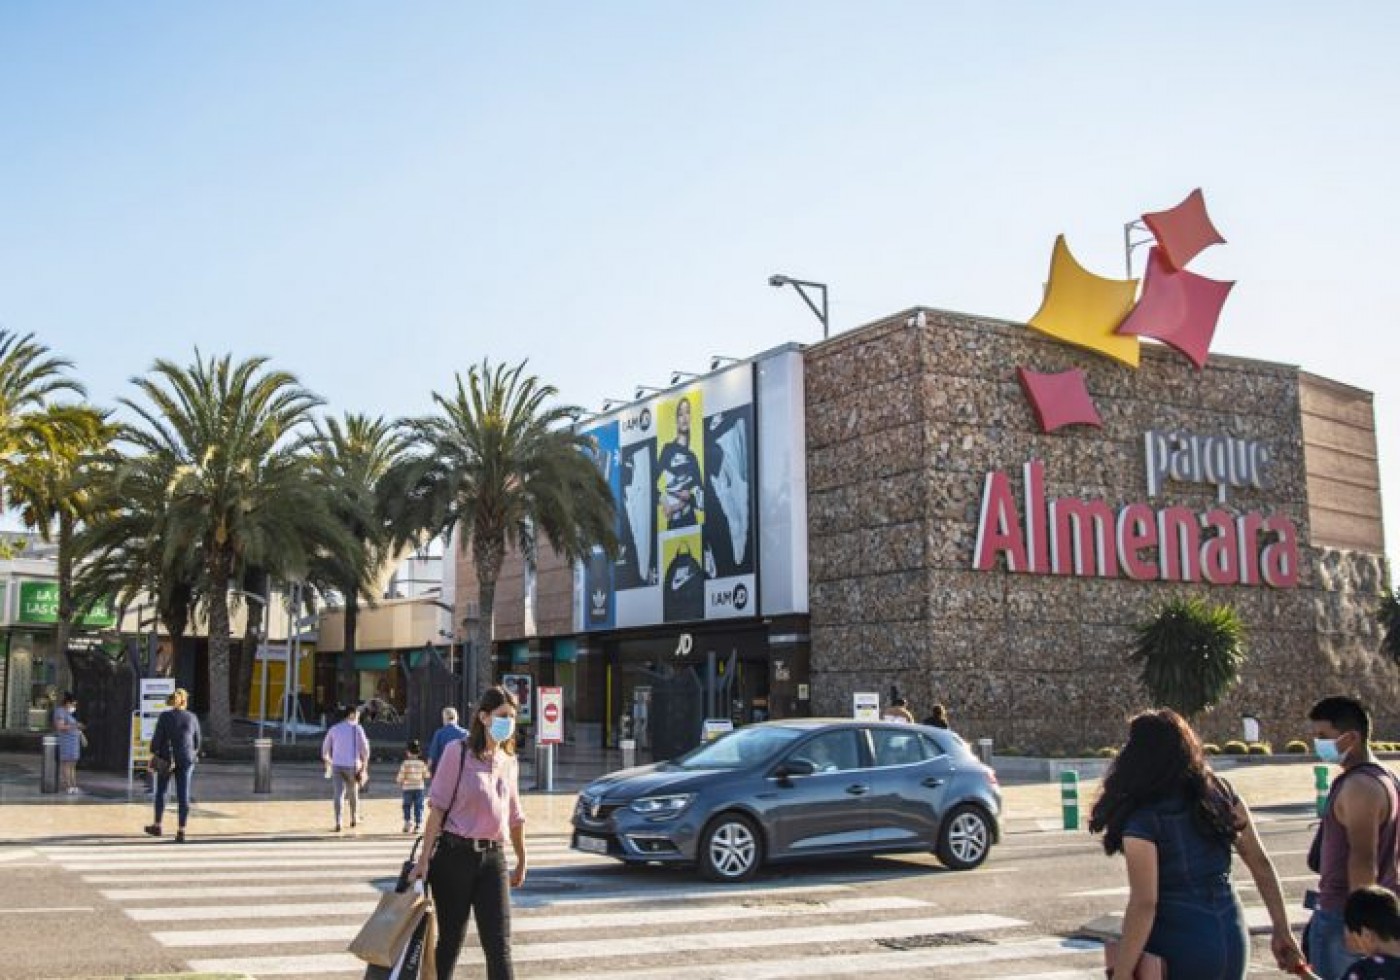 Parque Almenara Shopping Centre in the Lorca and Aguilas area